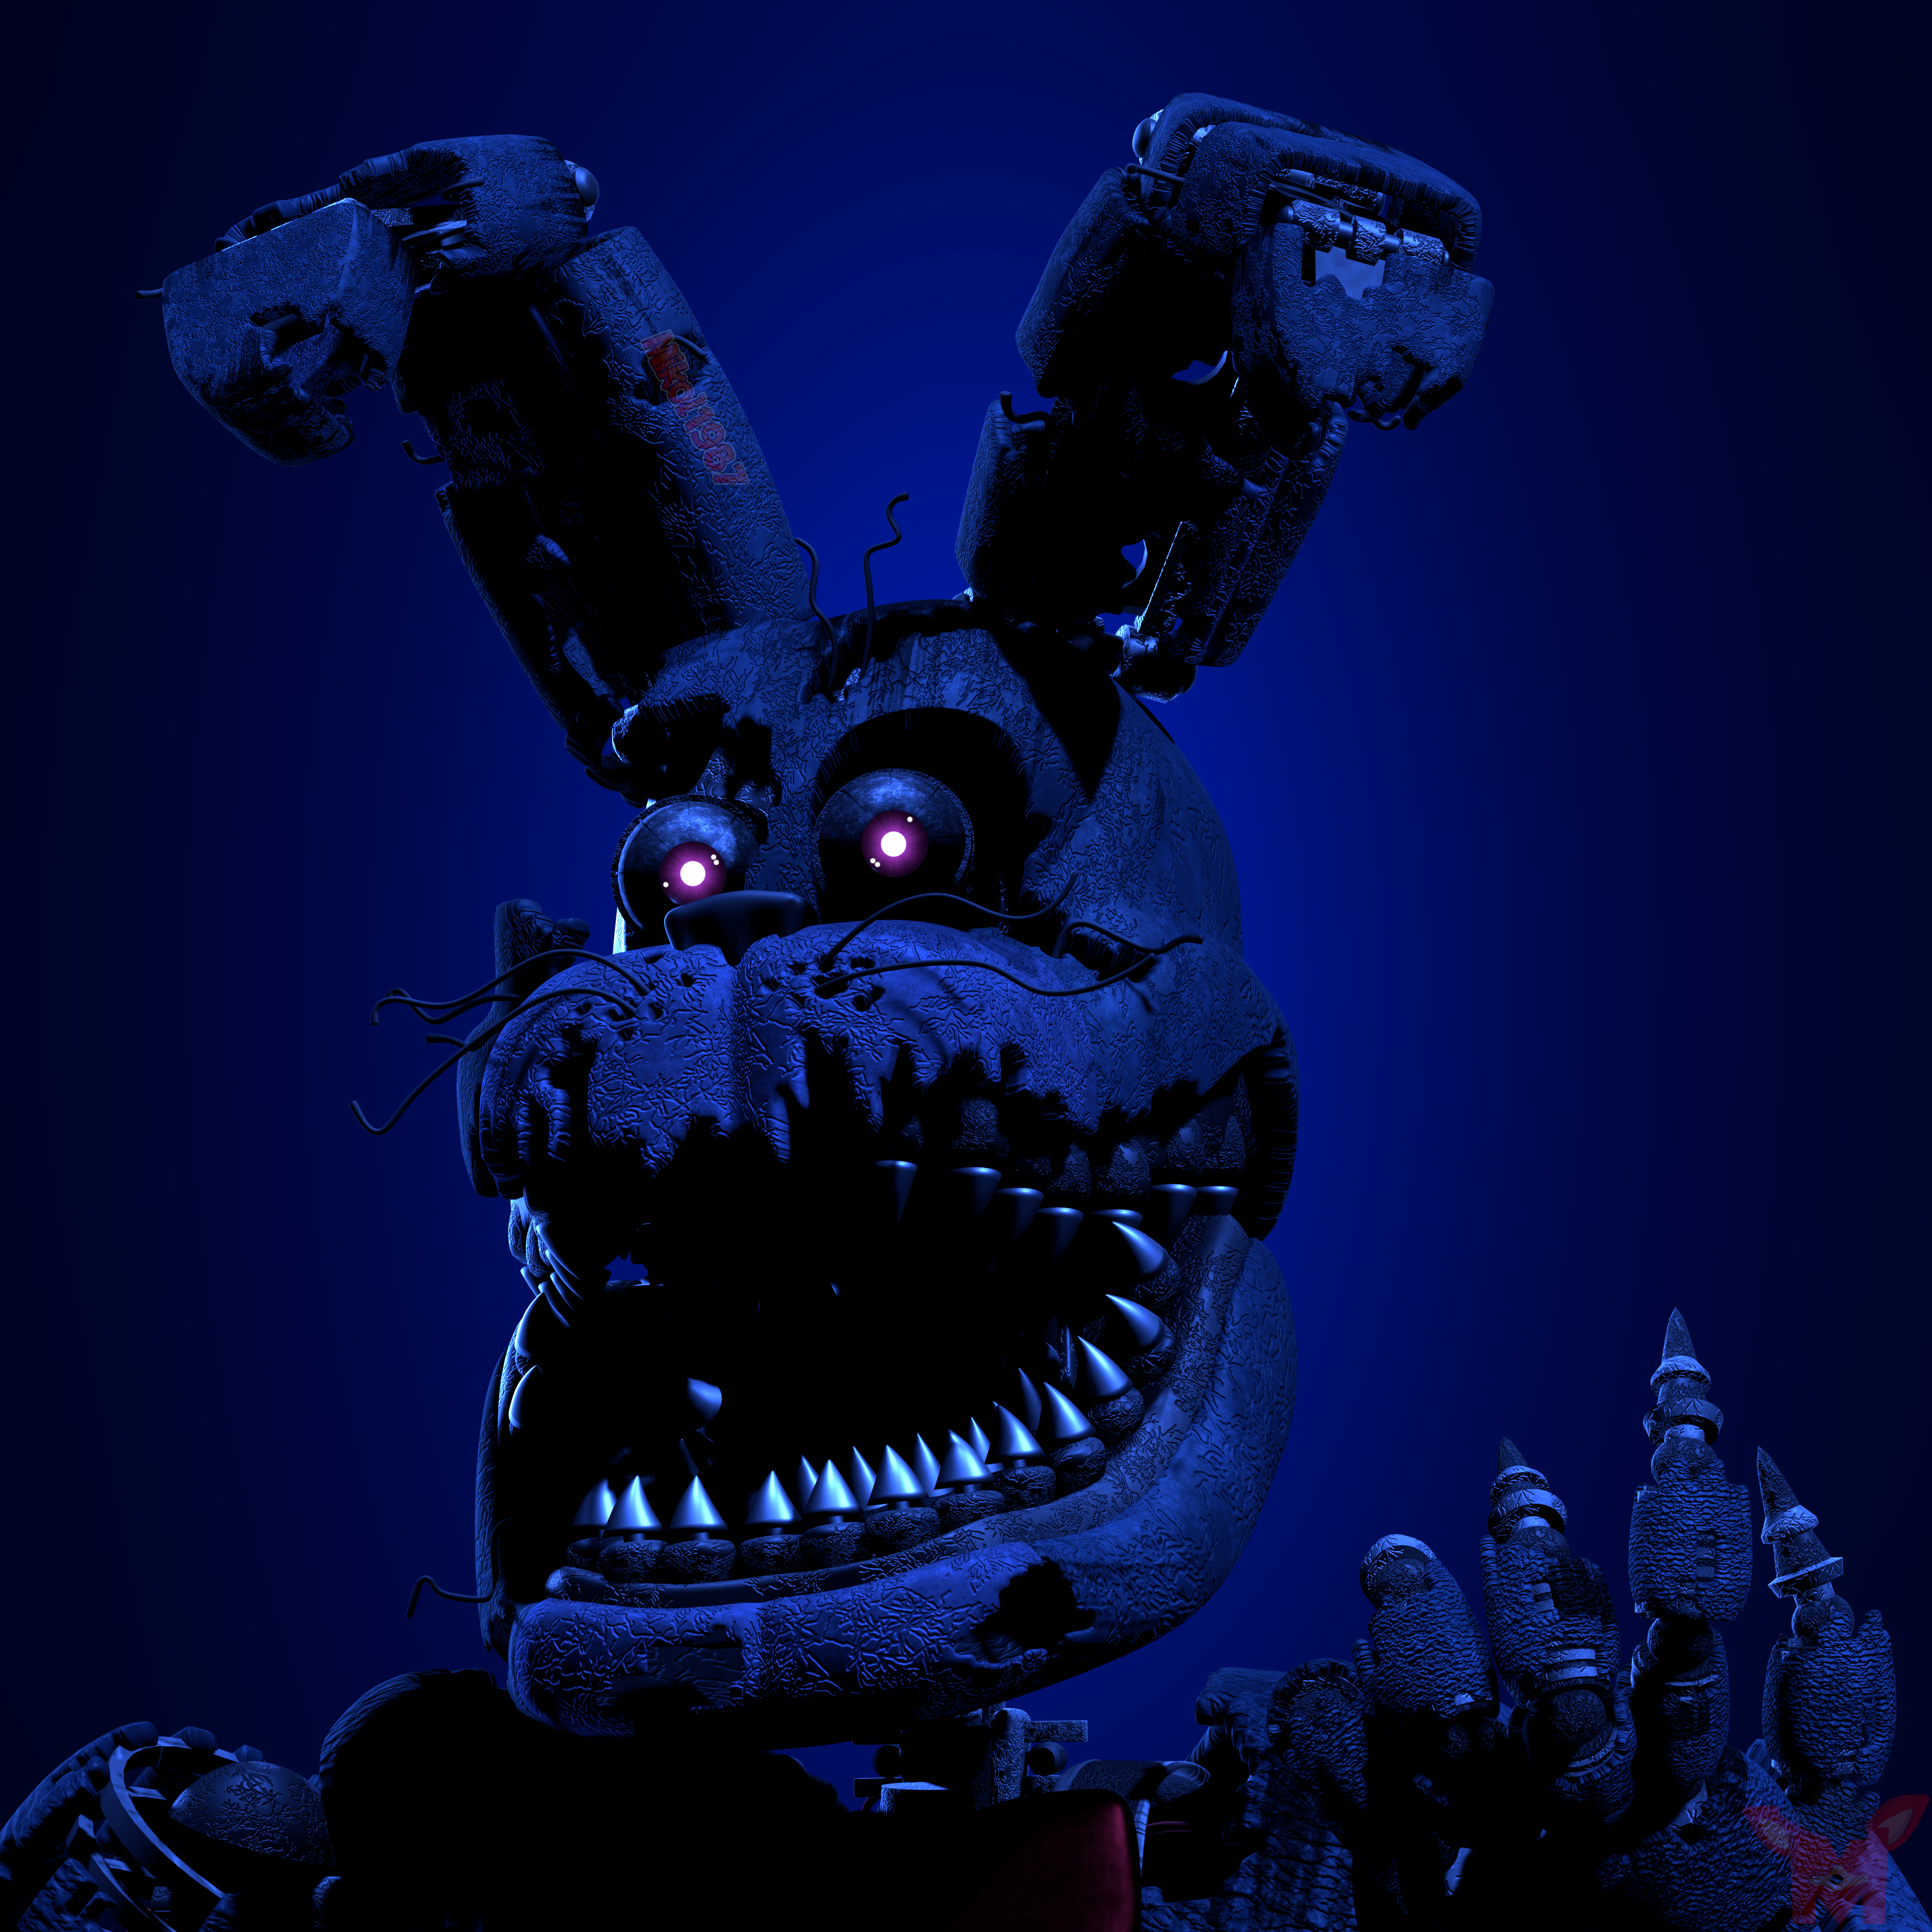 Sfm Fnaf 4) Rabbits worst nightmare Remake by xXMrTrapXx on DeviantArt